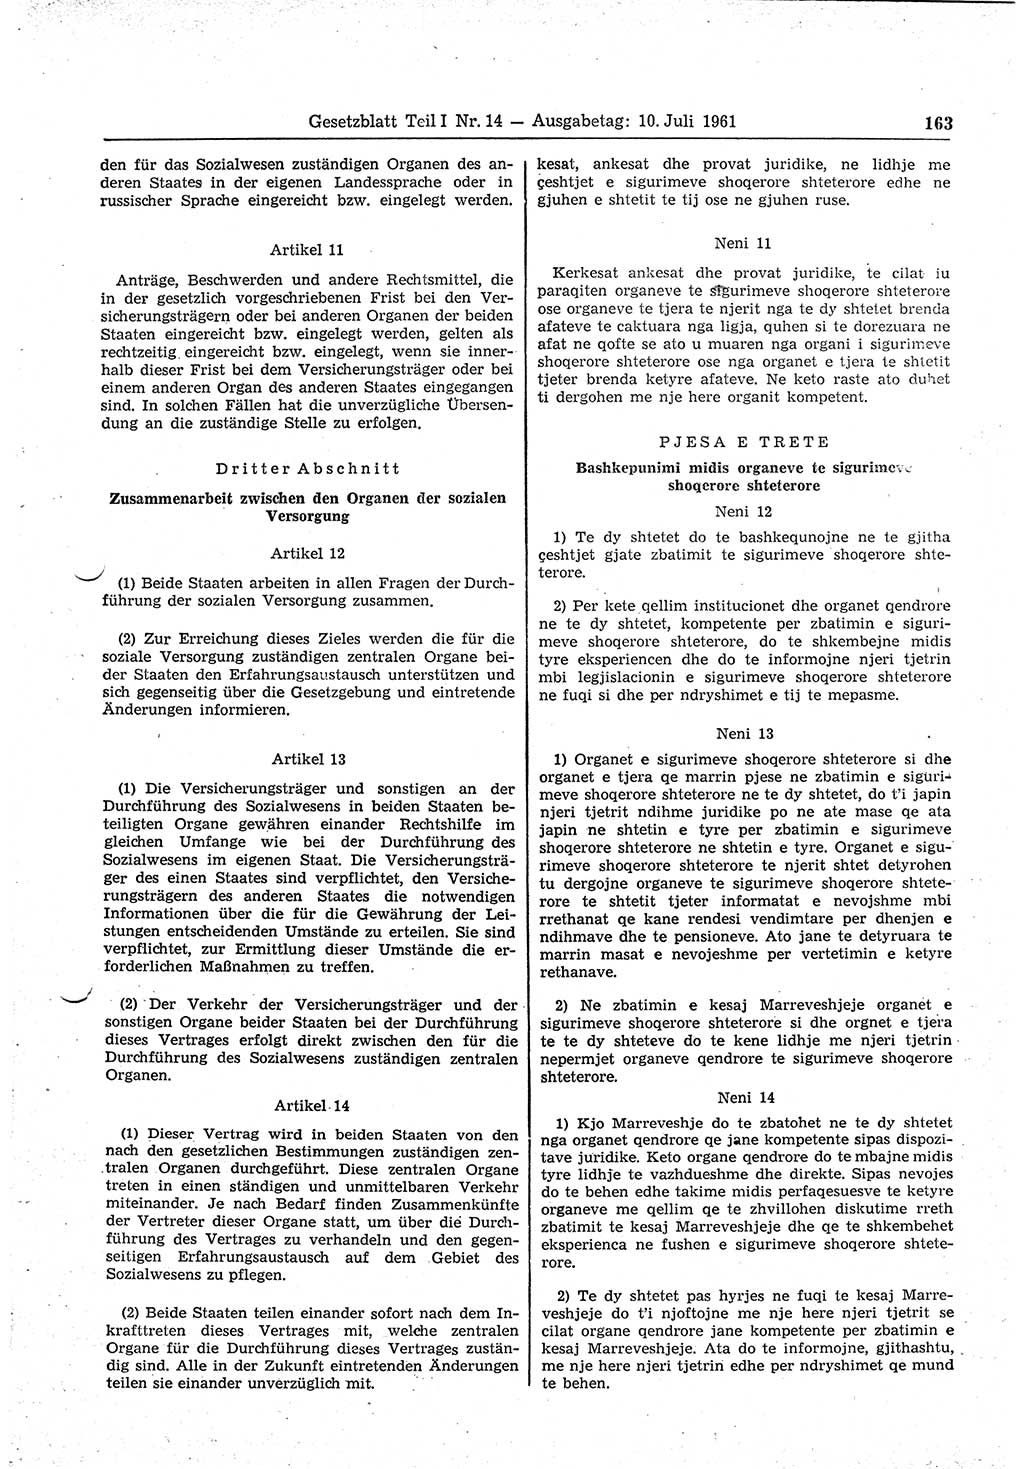 Gesetzblatt (GBl.) der Deutschen Demokratischen Republik (DDR) Teil Ⅰ 1961, Seite 163 (GBl. DDR Ⅰ 1961, S. 163)